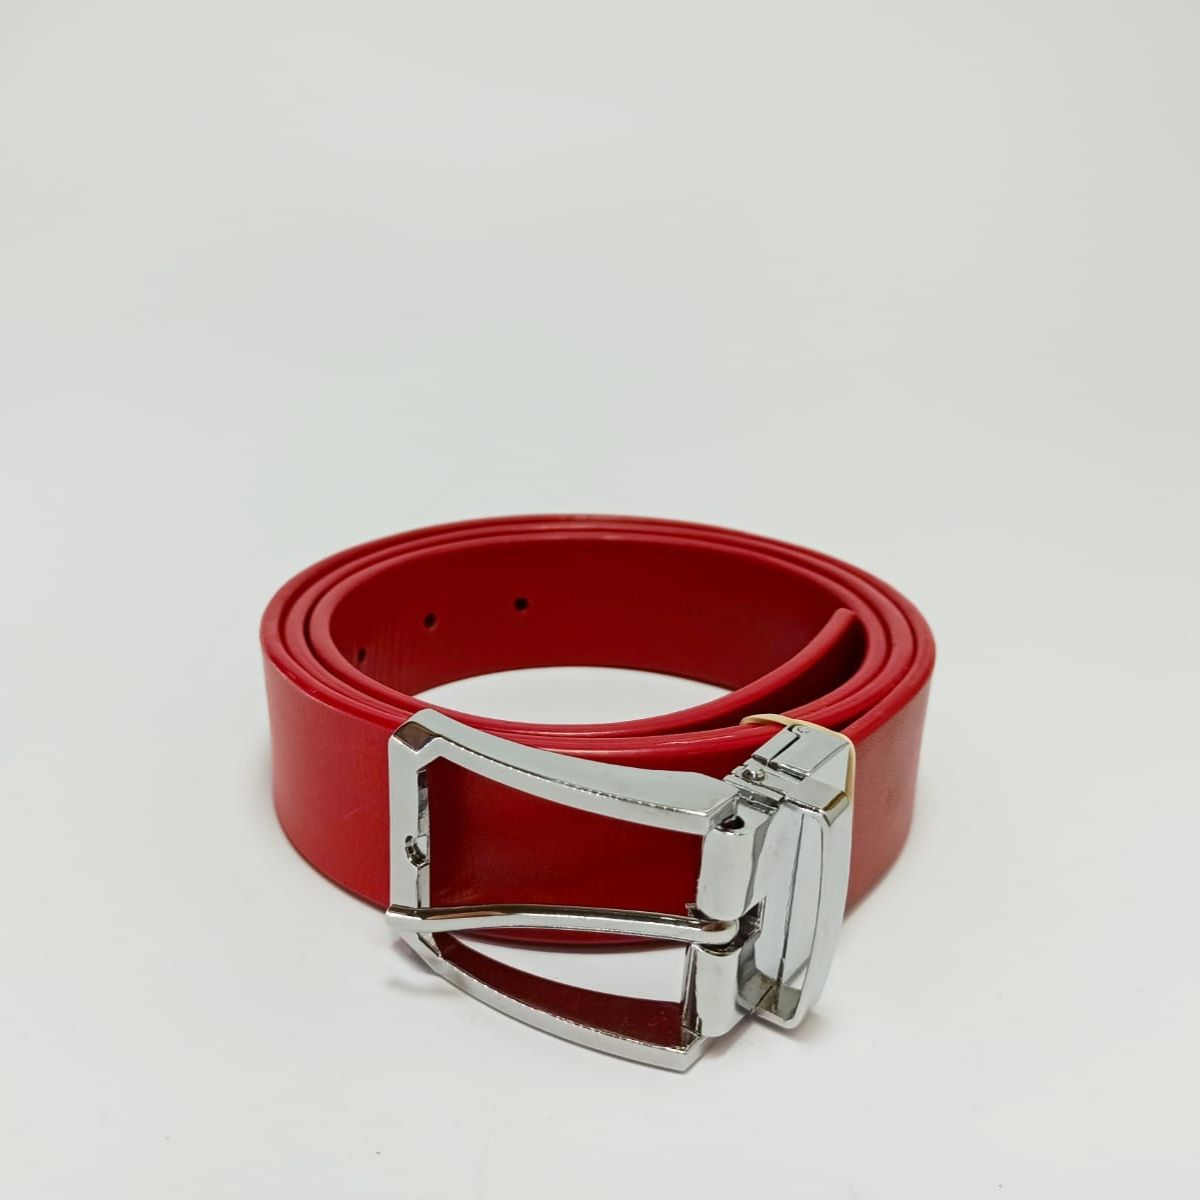 ▷ Cinturón Hombre de Piel - Rojo - 35 mm - evidentdoublee